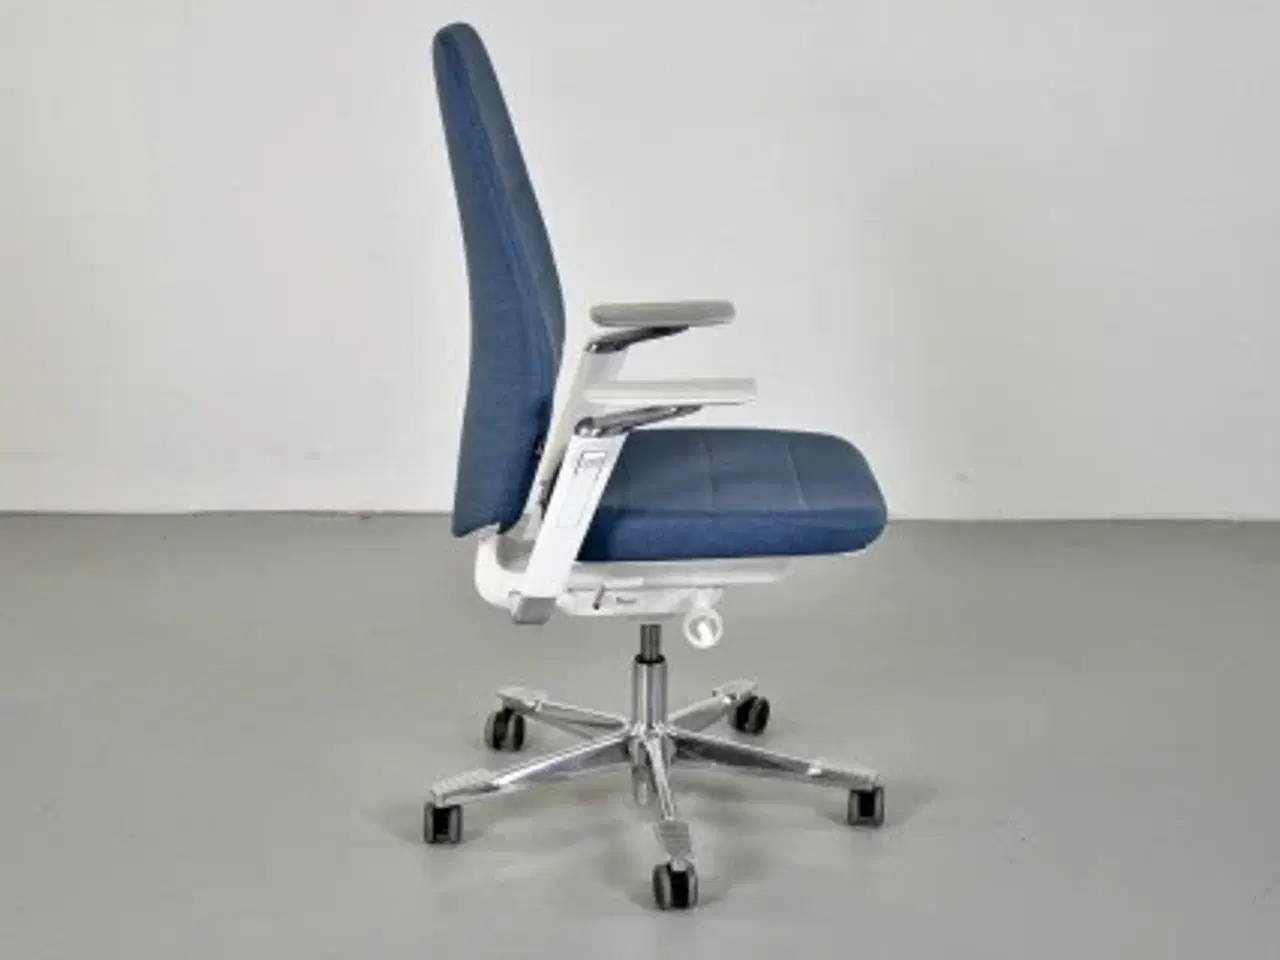 Billede 4 - Kinnarps capella white edition kontorstol med blåt polster og armlæn